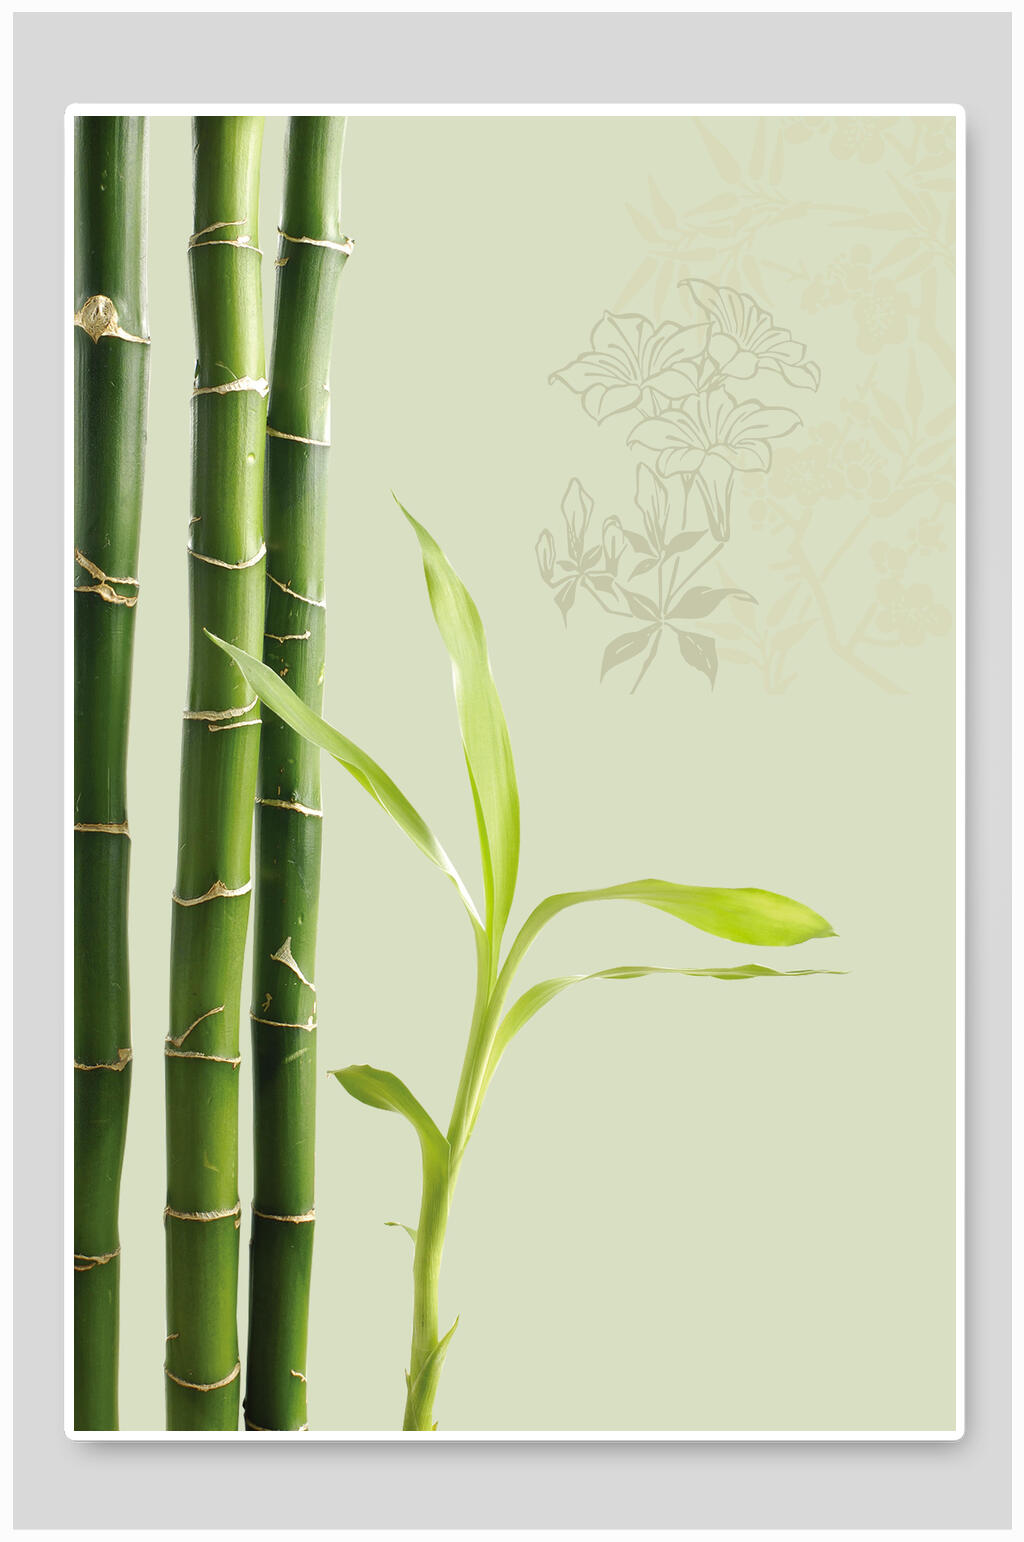 竹子的植物名片图片